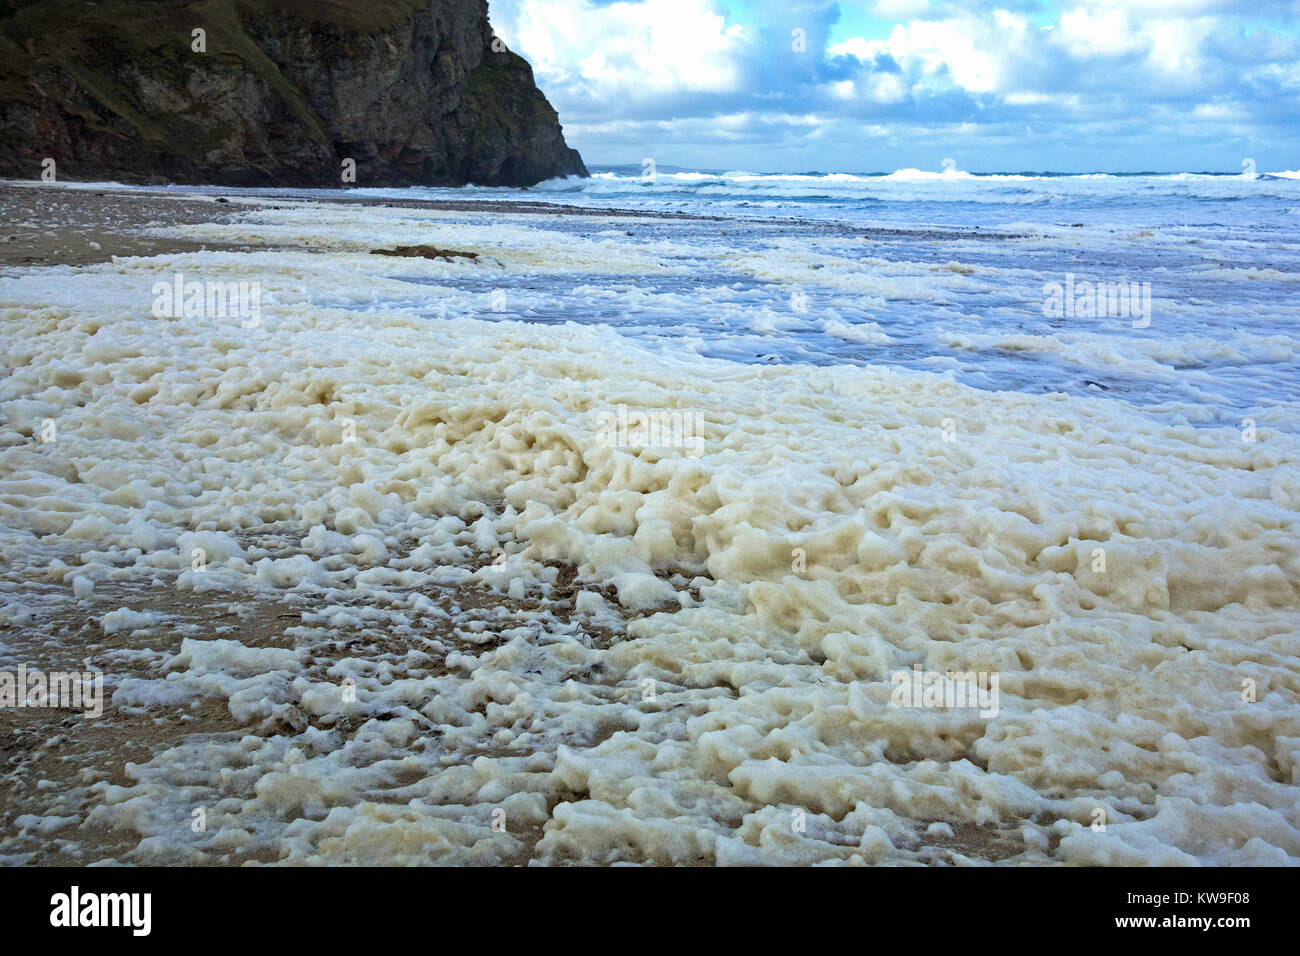 Écume de mer, océan, plage de mousse ou mousse spume sur porthtowan beach Cornwall, UK, la mousse est généralement créée au cours d'une tempête. Banque D'Images